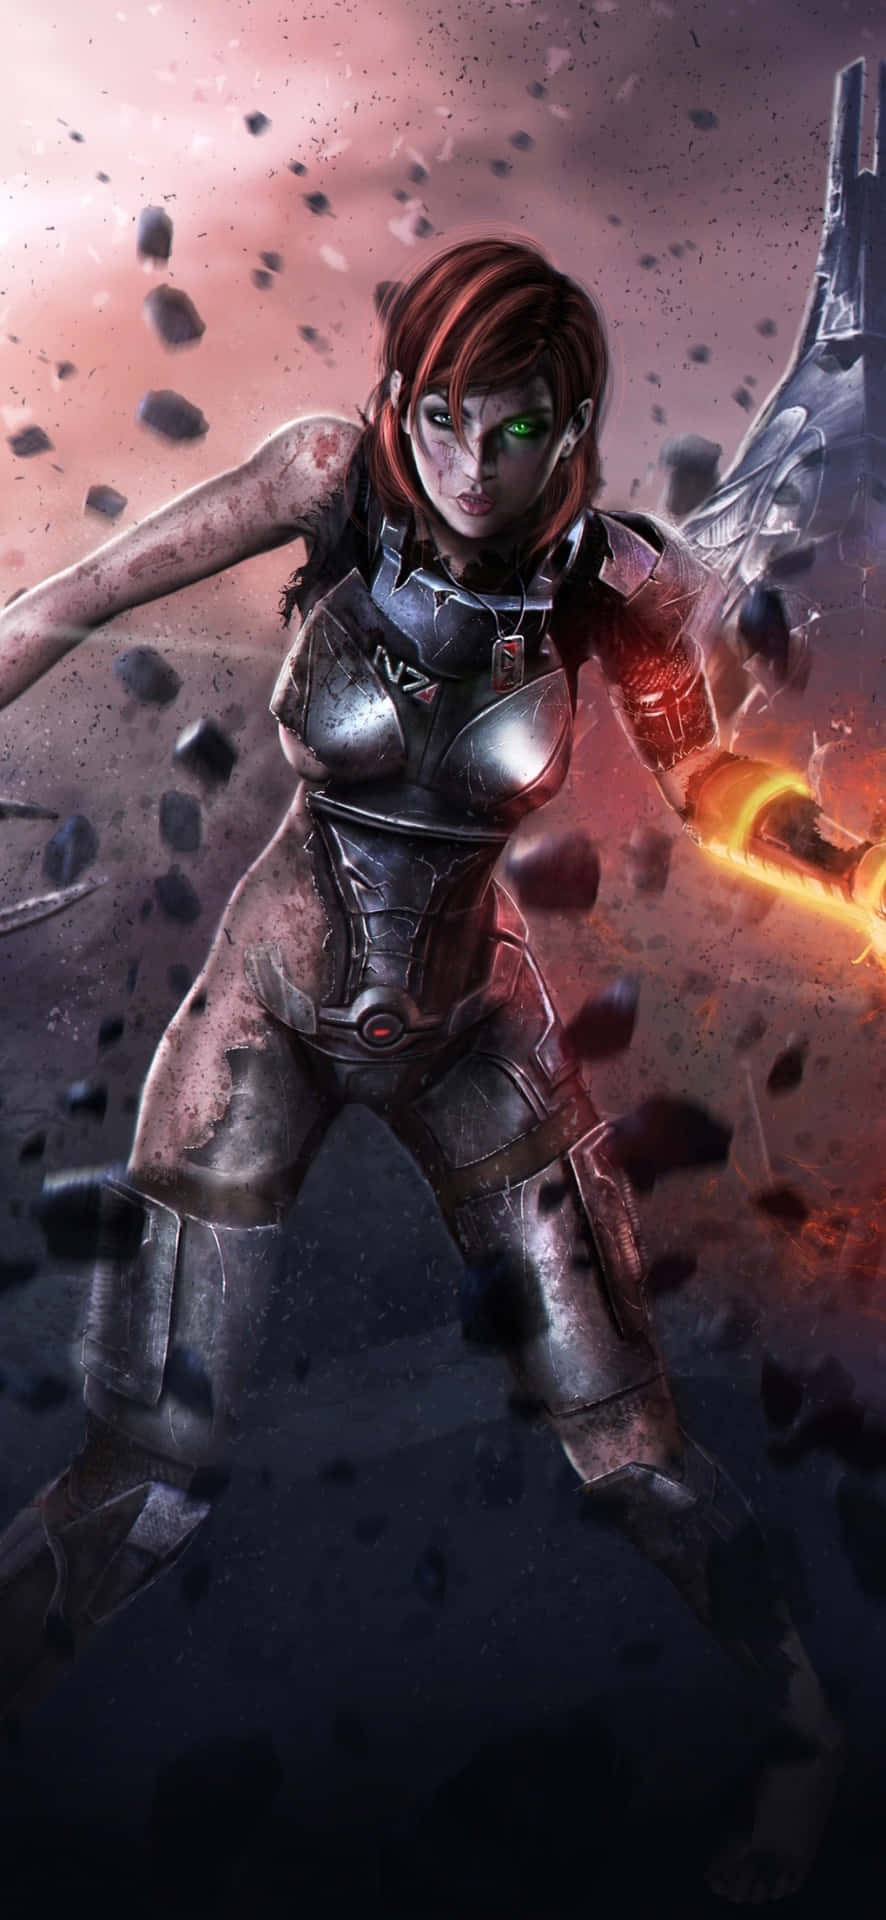 Caption: Commander Shepard in Action Wallpaper